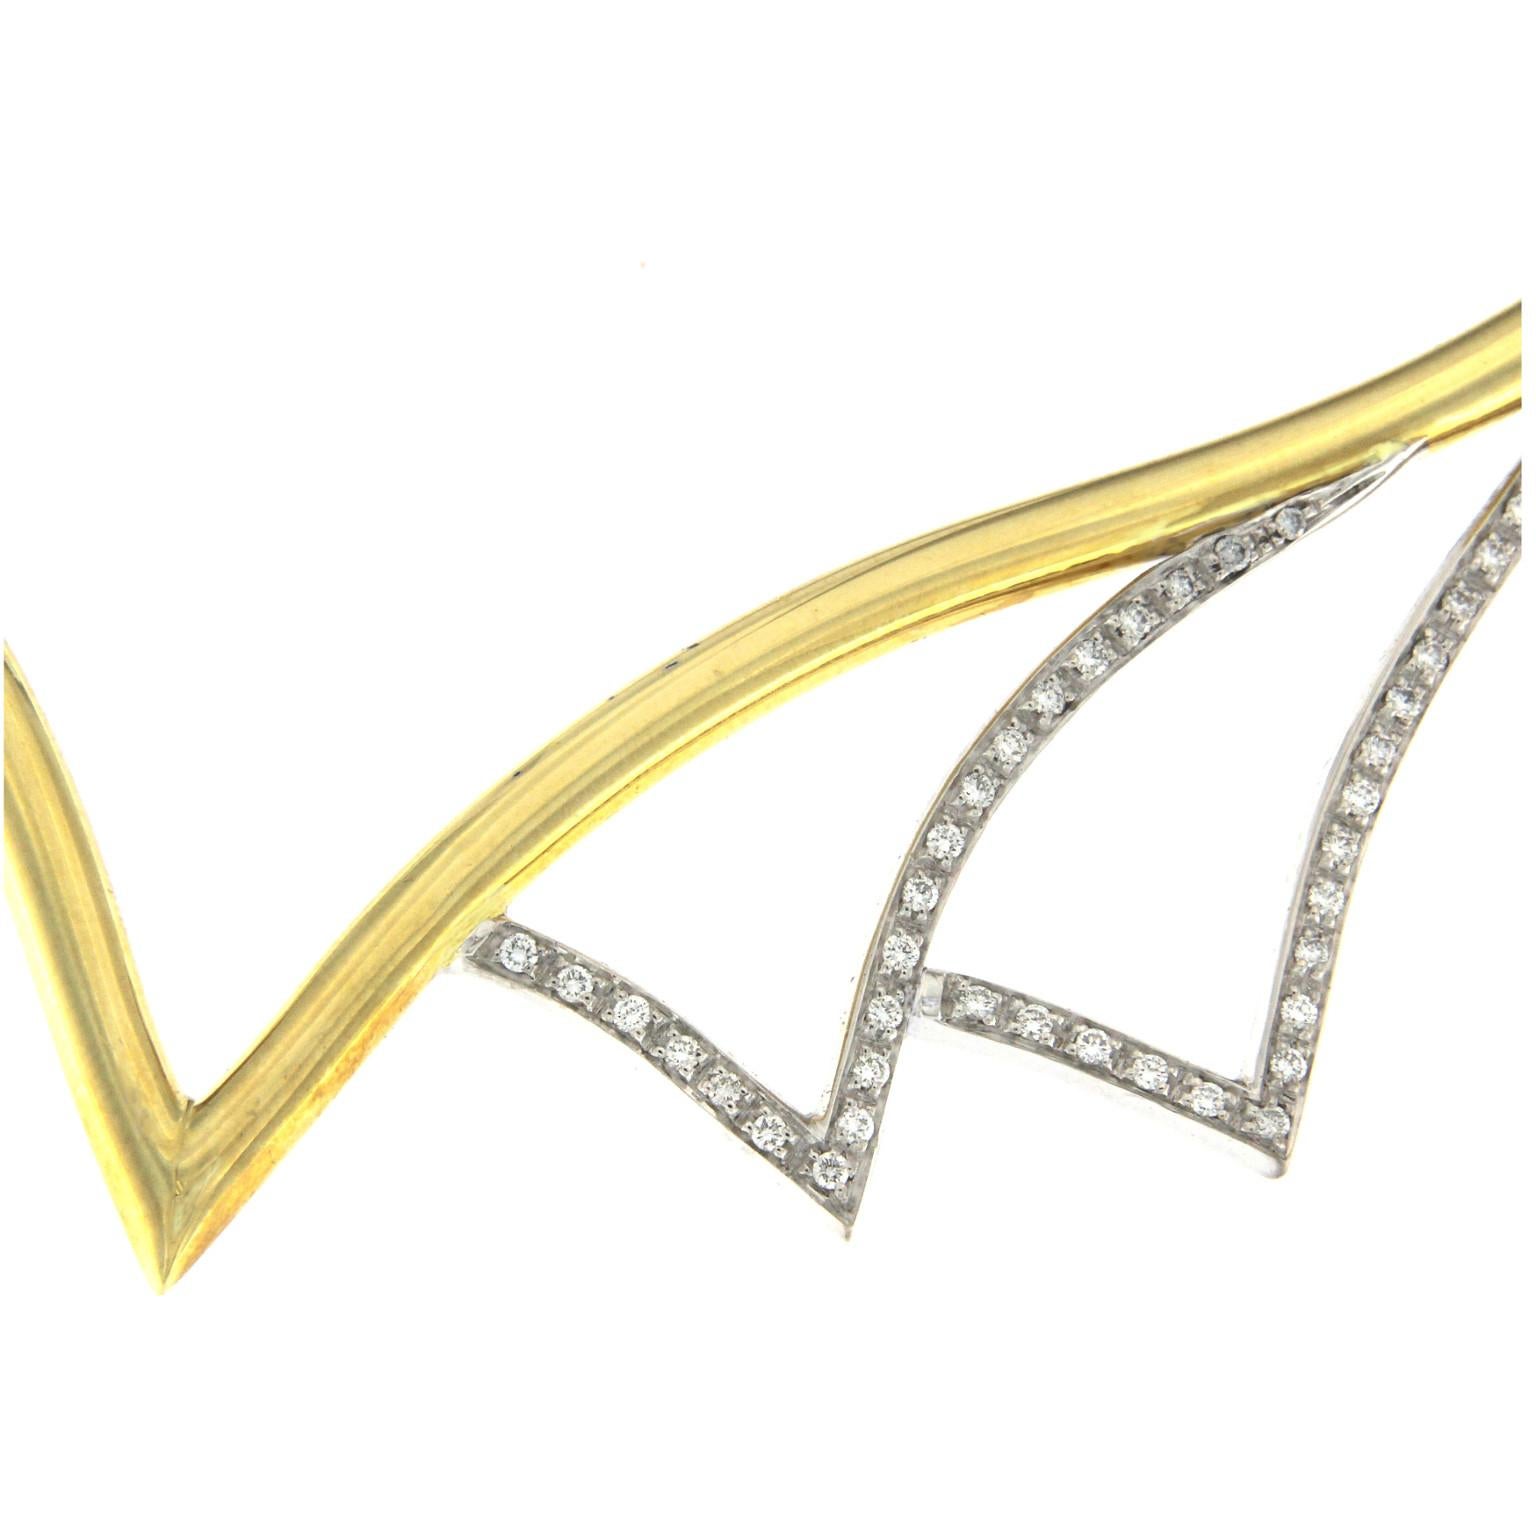 Ovale, starre Halskette aus dünnem, rundem Fass, die sich perfekt an die weibliche Halsanatomie anpasst.
Diese Halskette ist Teil der Kollektion comma
Vollständig aus Gelbgold und zwei Windschutzscheiben auf der Vorderseite, beide mit 43 Diamanten